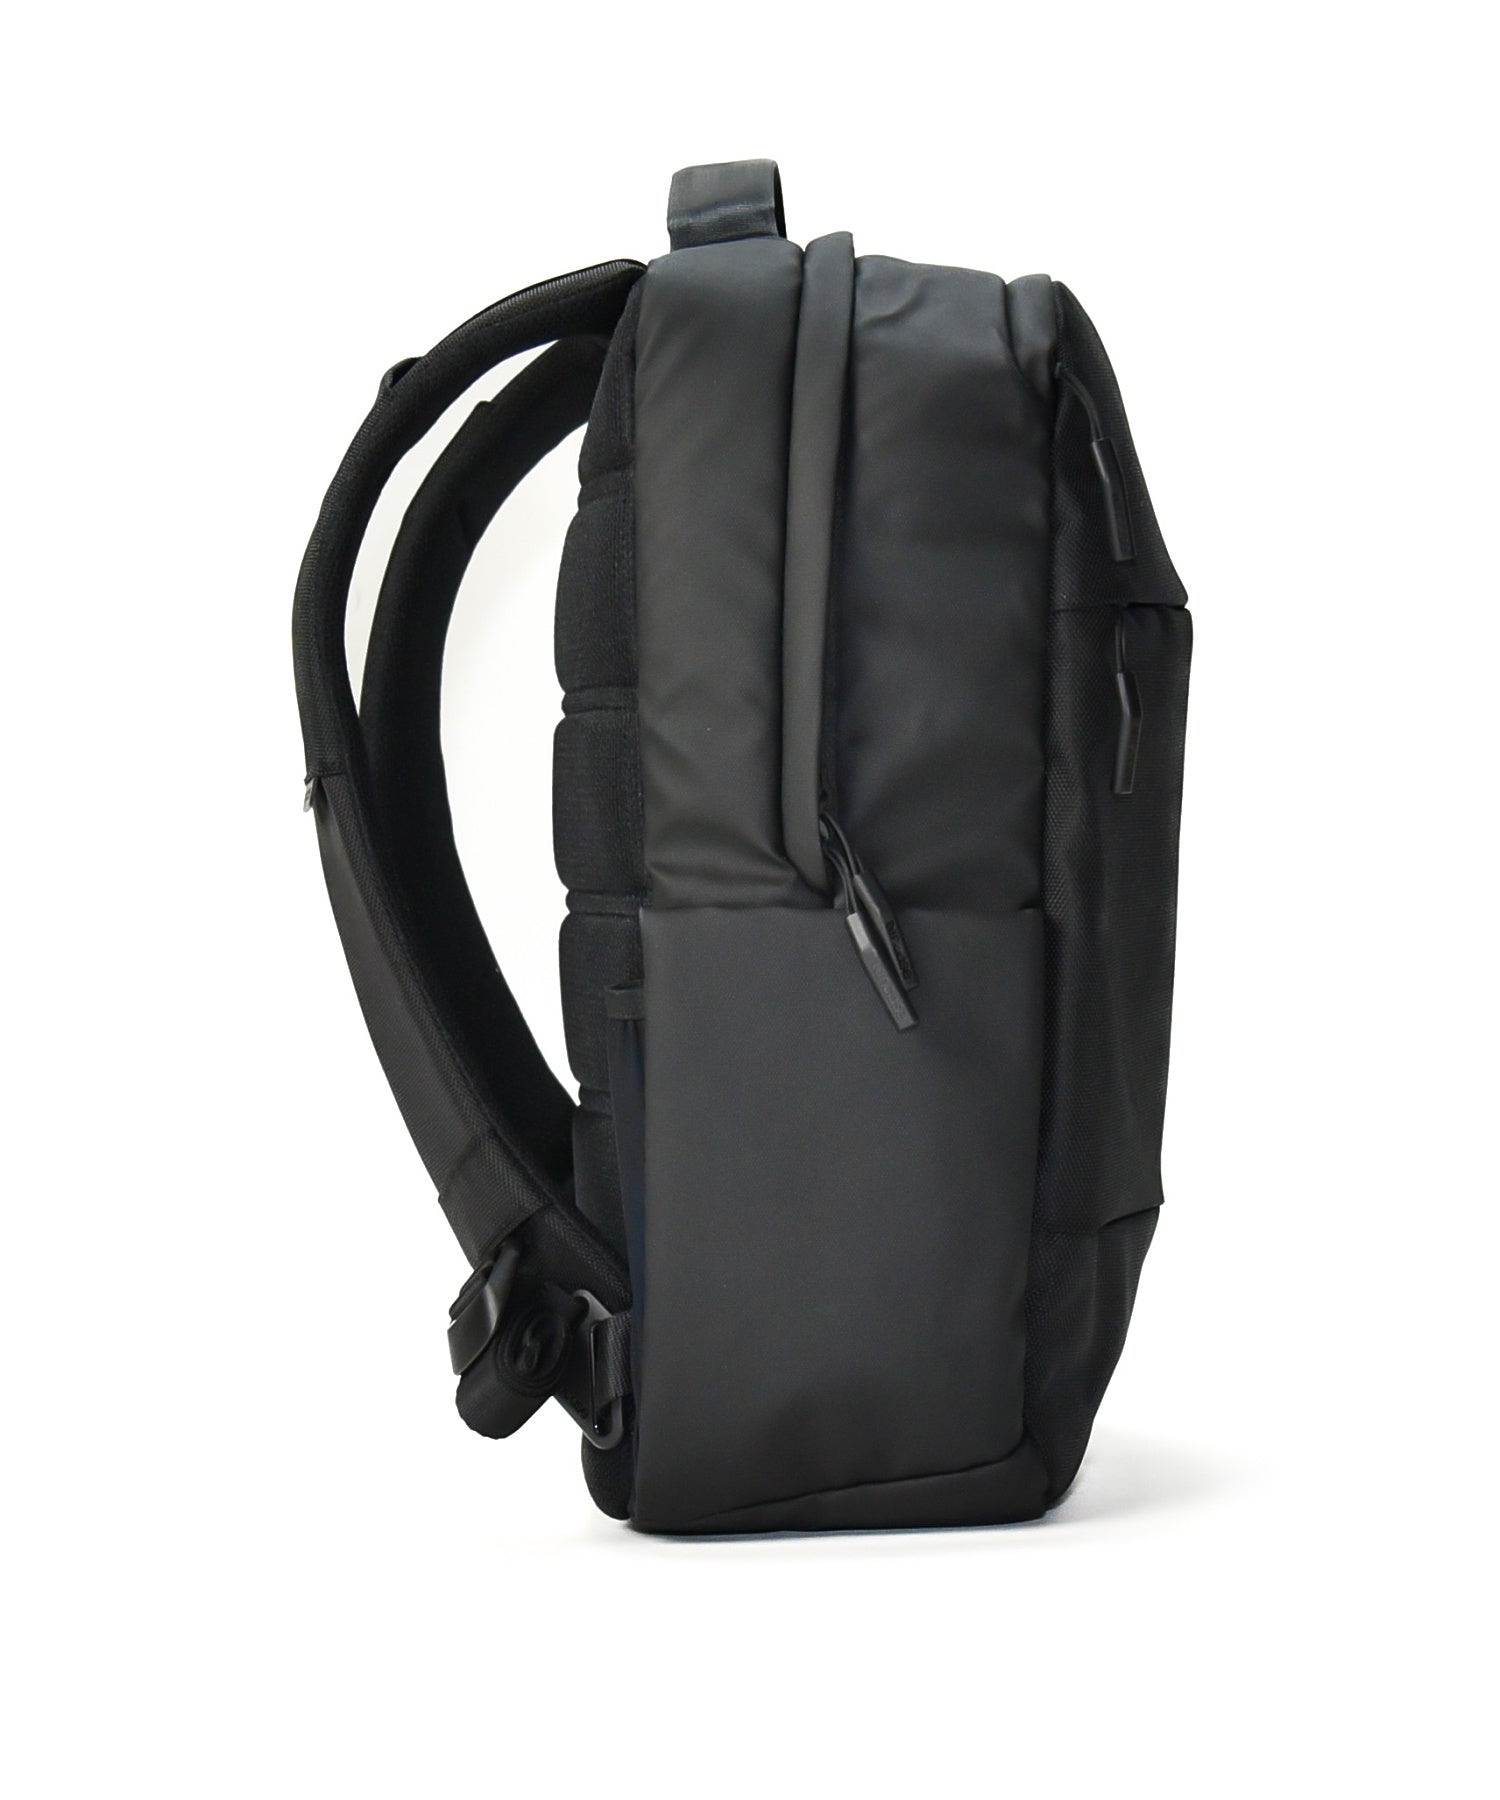 INBP100626-BLK Incase City Compact Backpack w/1680D - Black